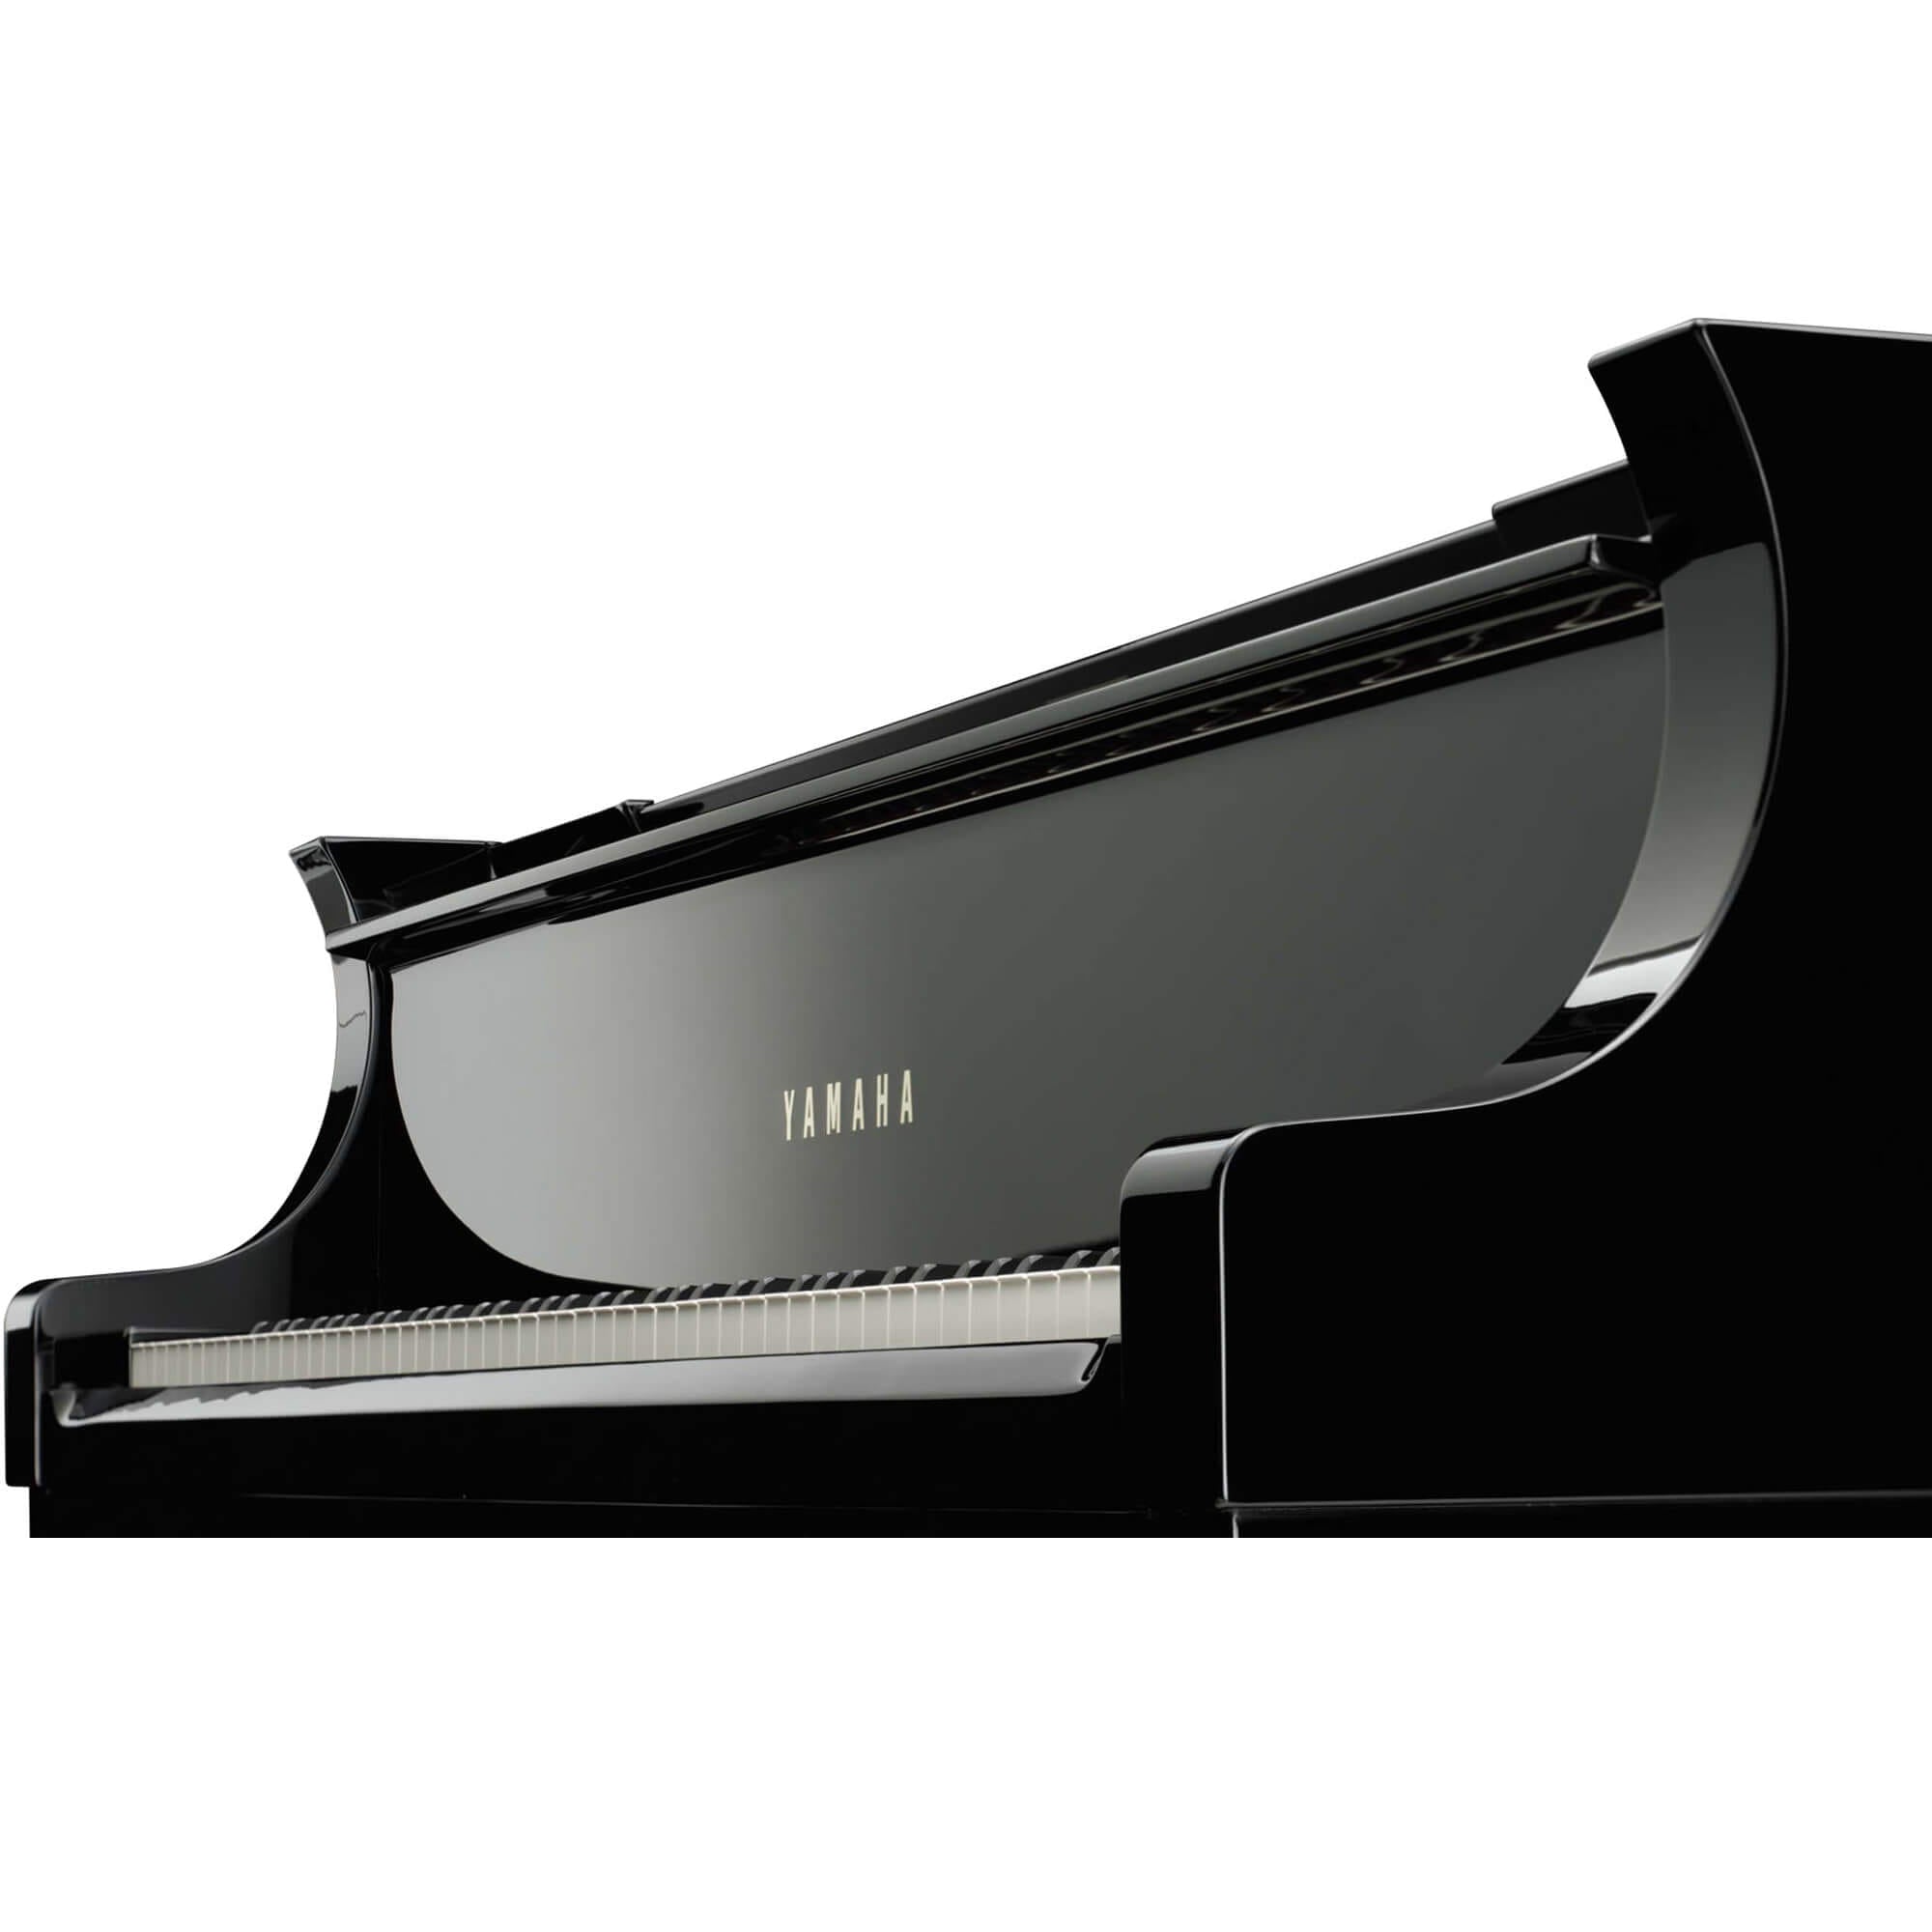 Grand Piano Yamaha CFX Premium